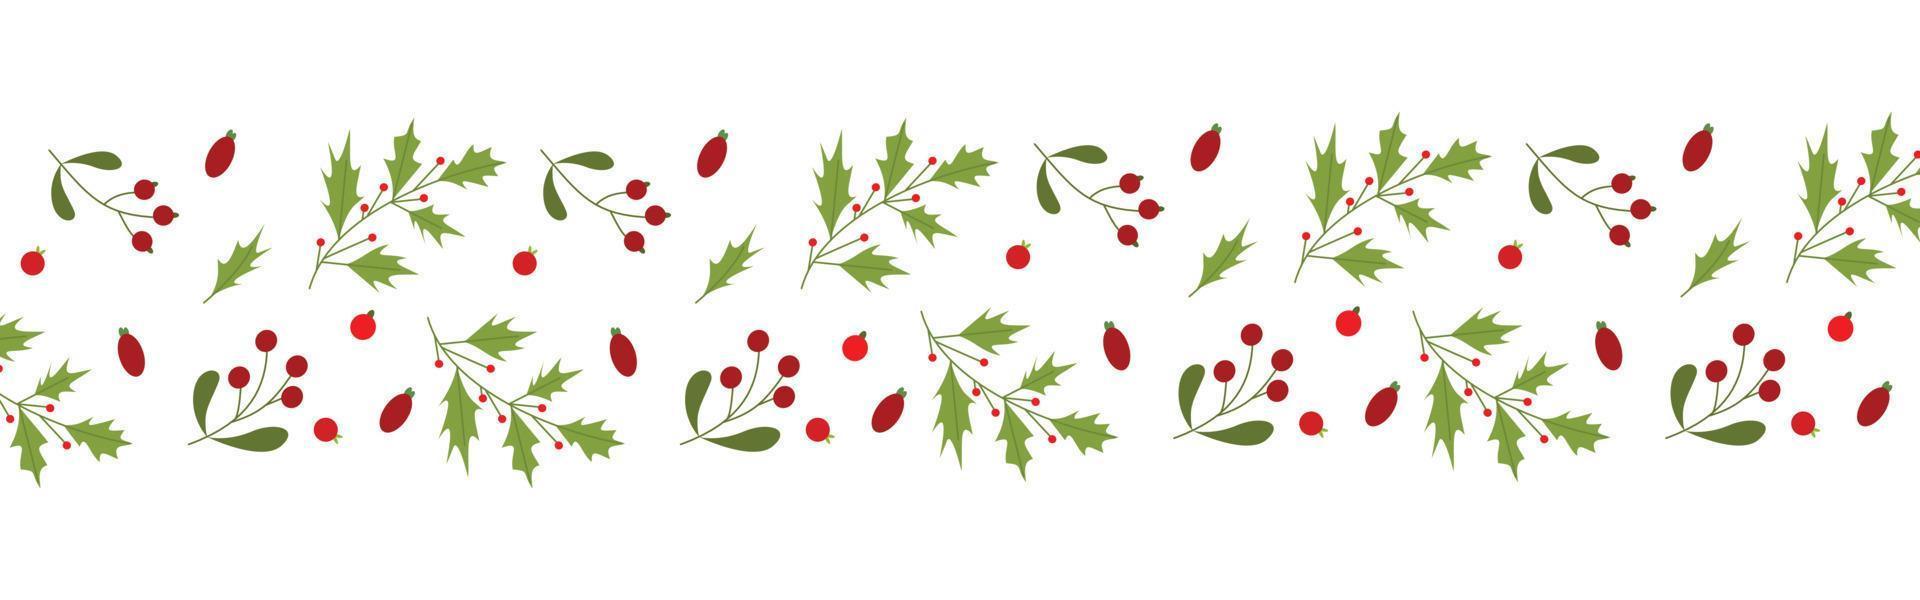 dekoration von blättern und blumen für weihnachtshintergrunddesign. Blatt- und Beerenmusterillustration für Tapete vektor